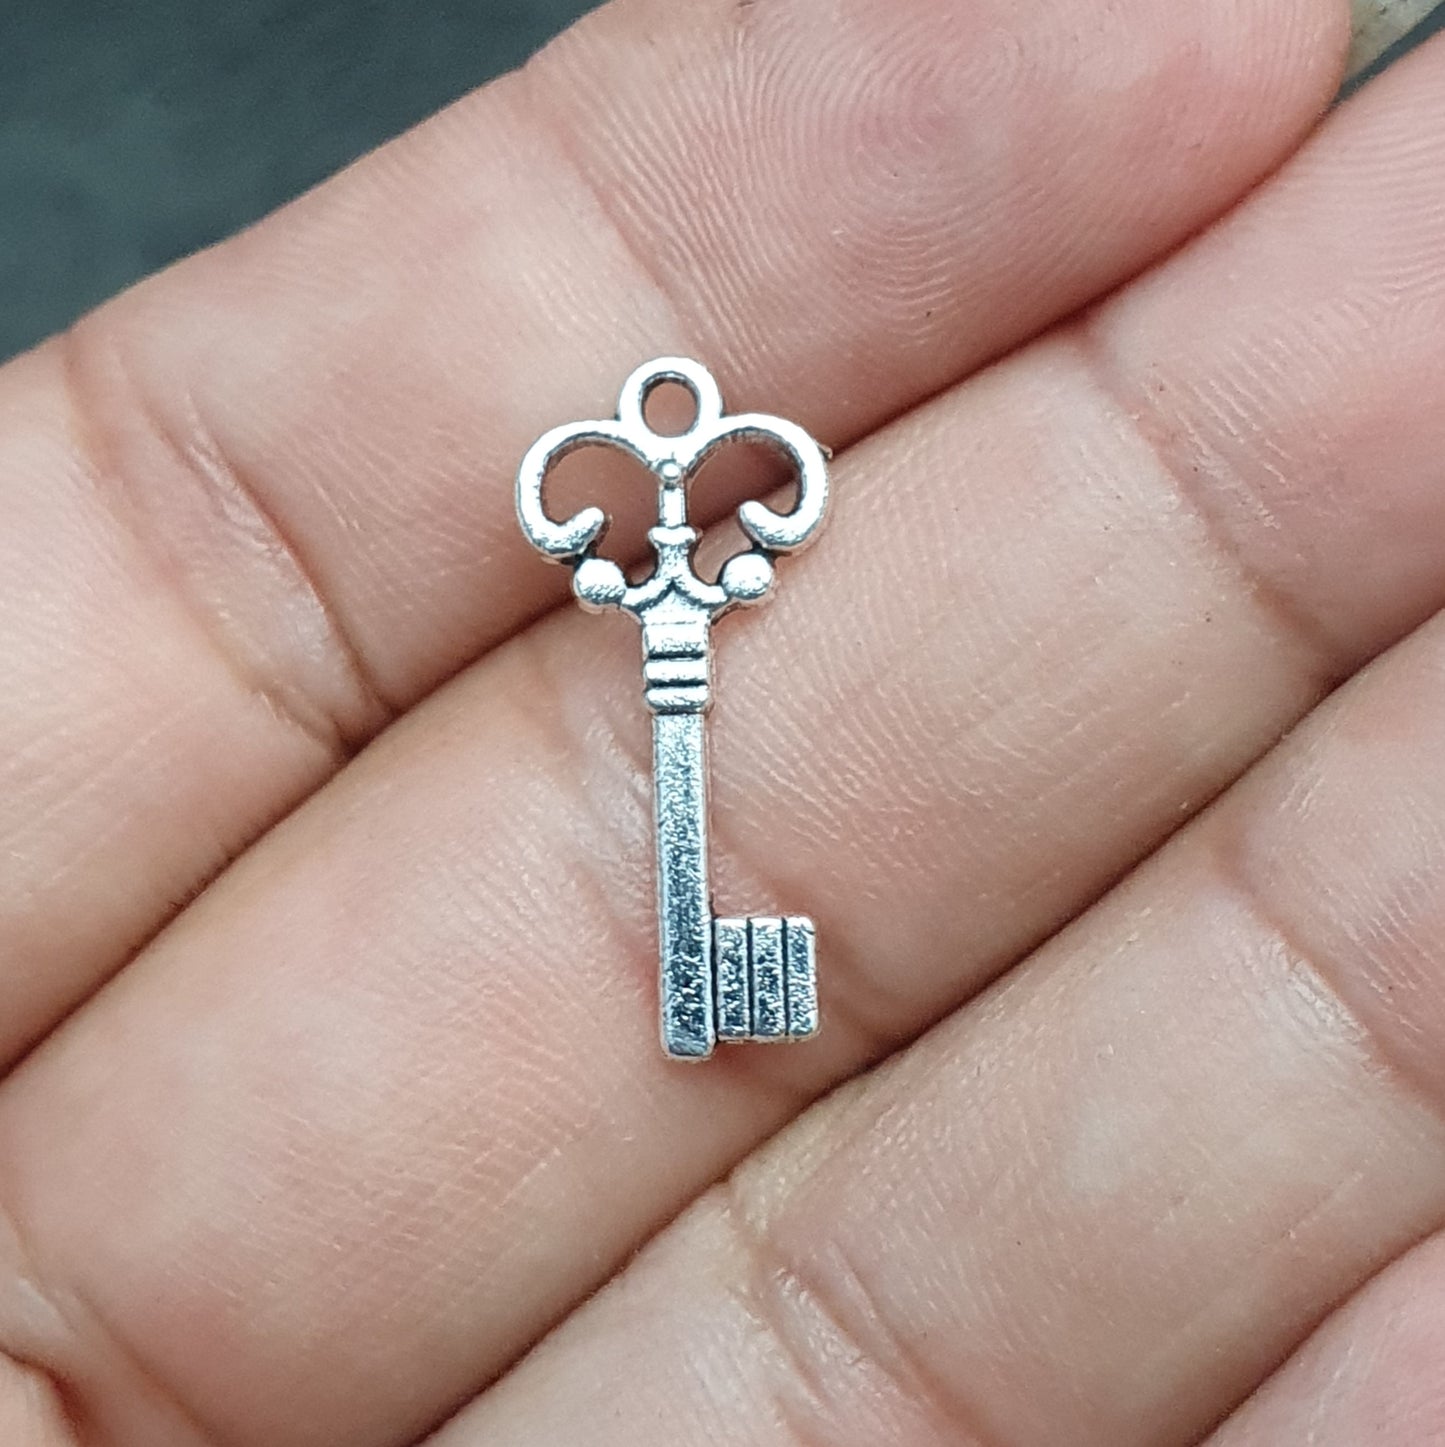 5 kleine Anhänger Schlüssel, 21mm, antik silberfarbig